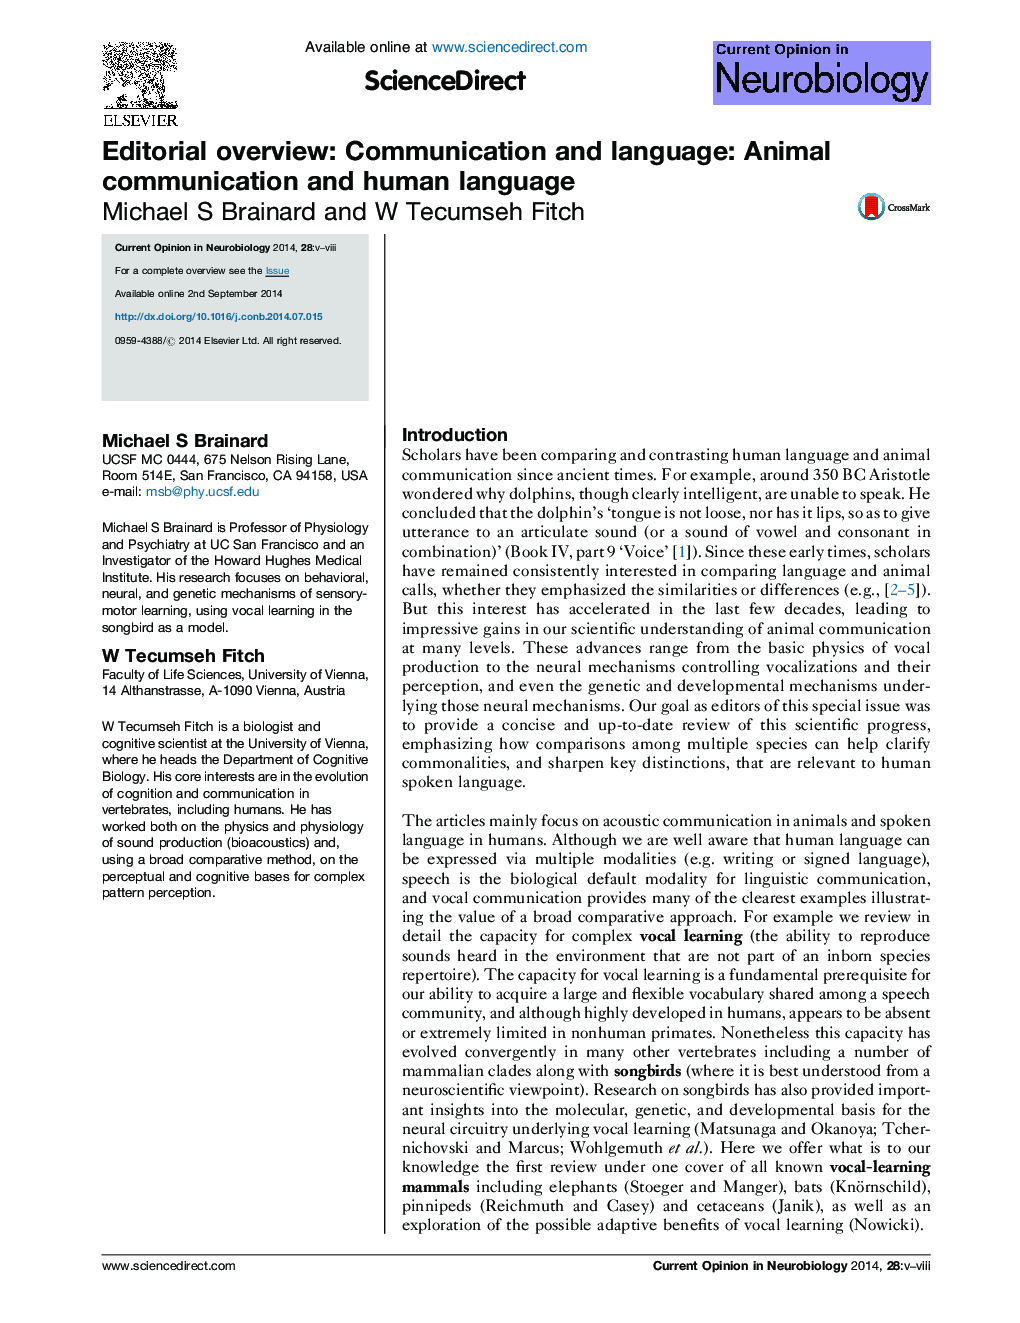 خلاصه مقاله: ارتباط و زبان: ارتباطات حیوانی و زبان انسانی 